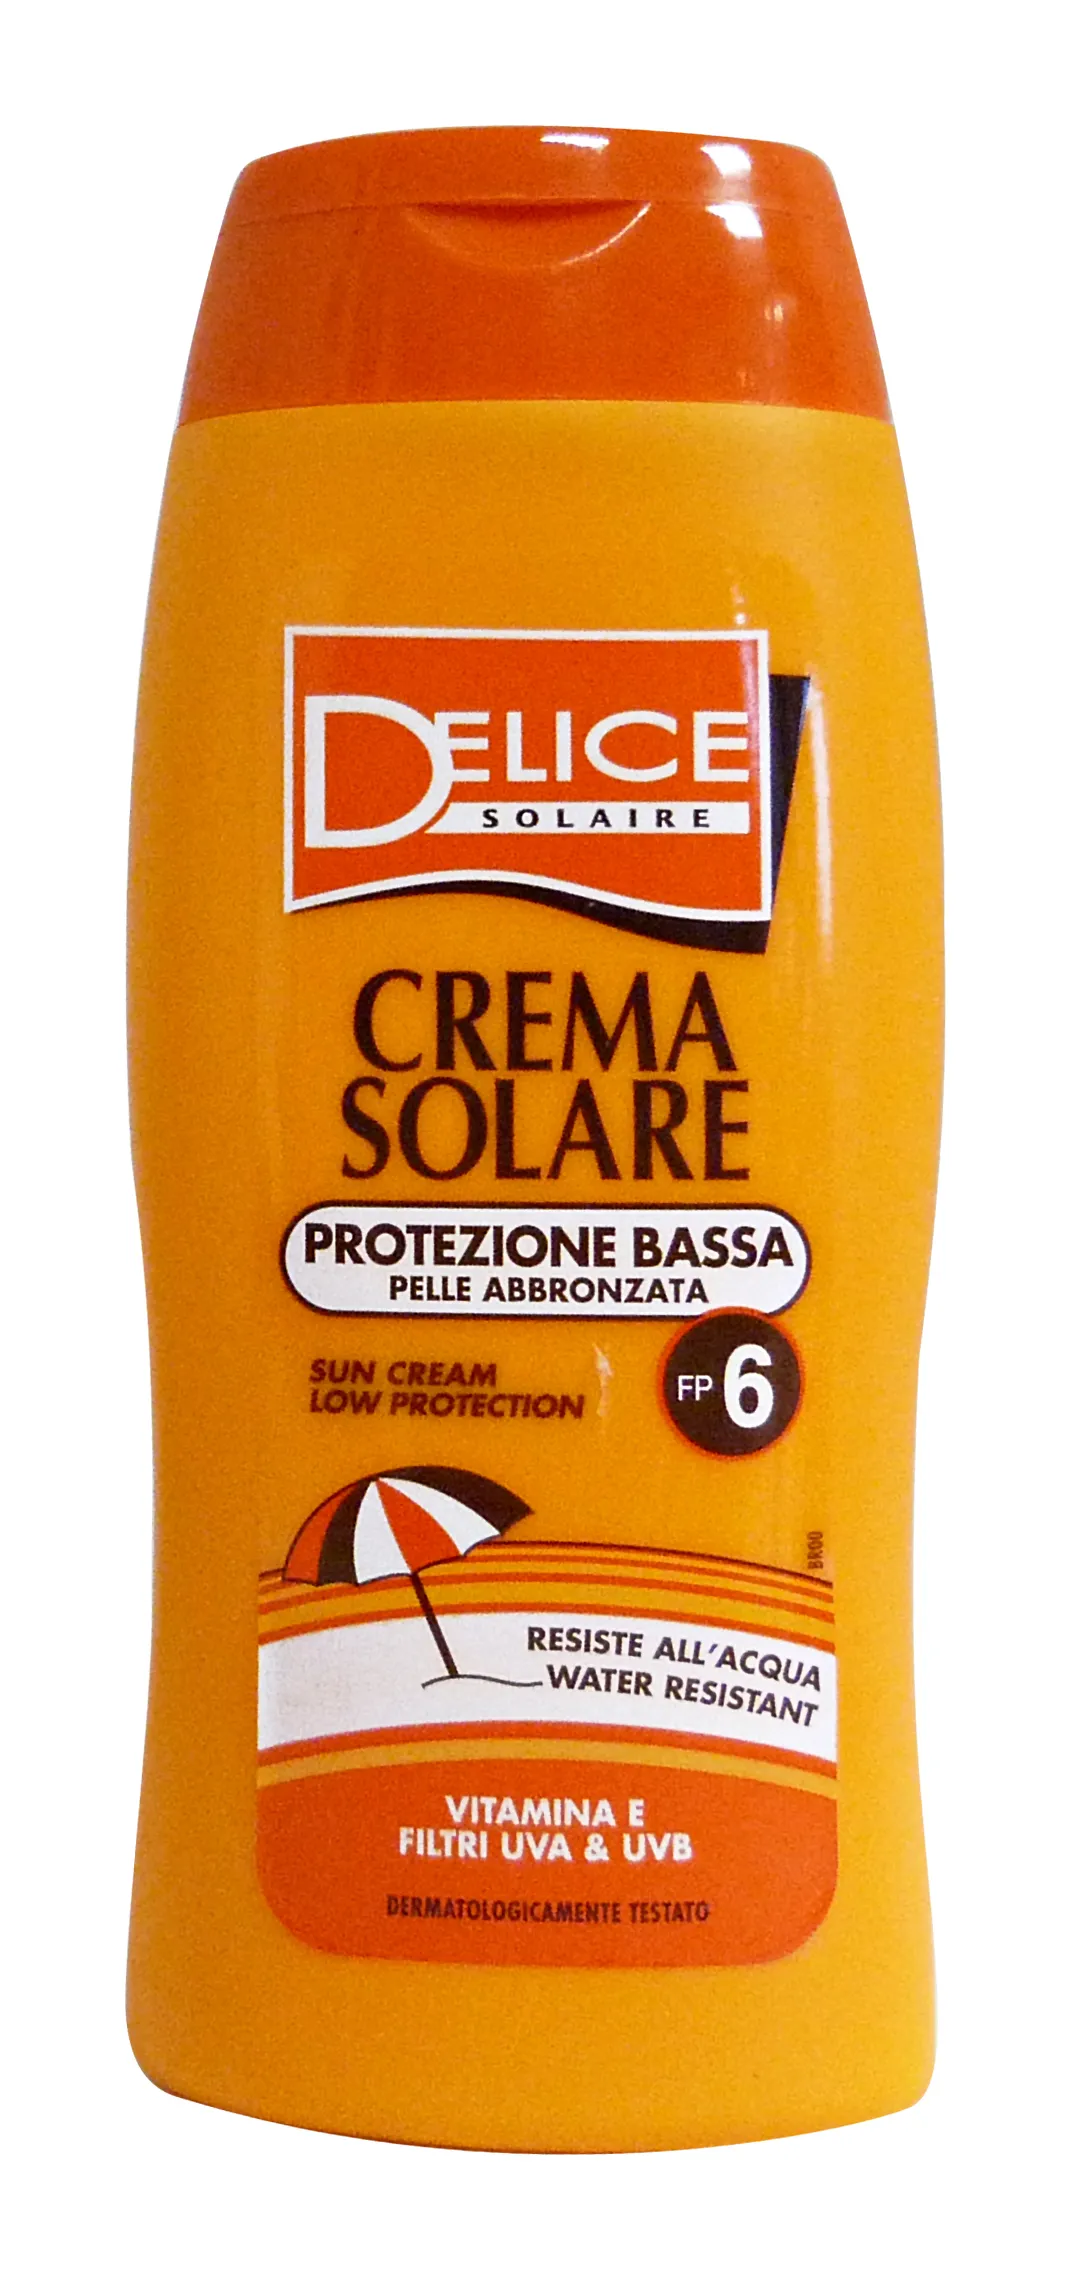 "DELICE Fp6 crema solare 250 ml. - Prodotti solari"